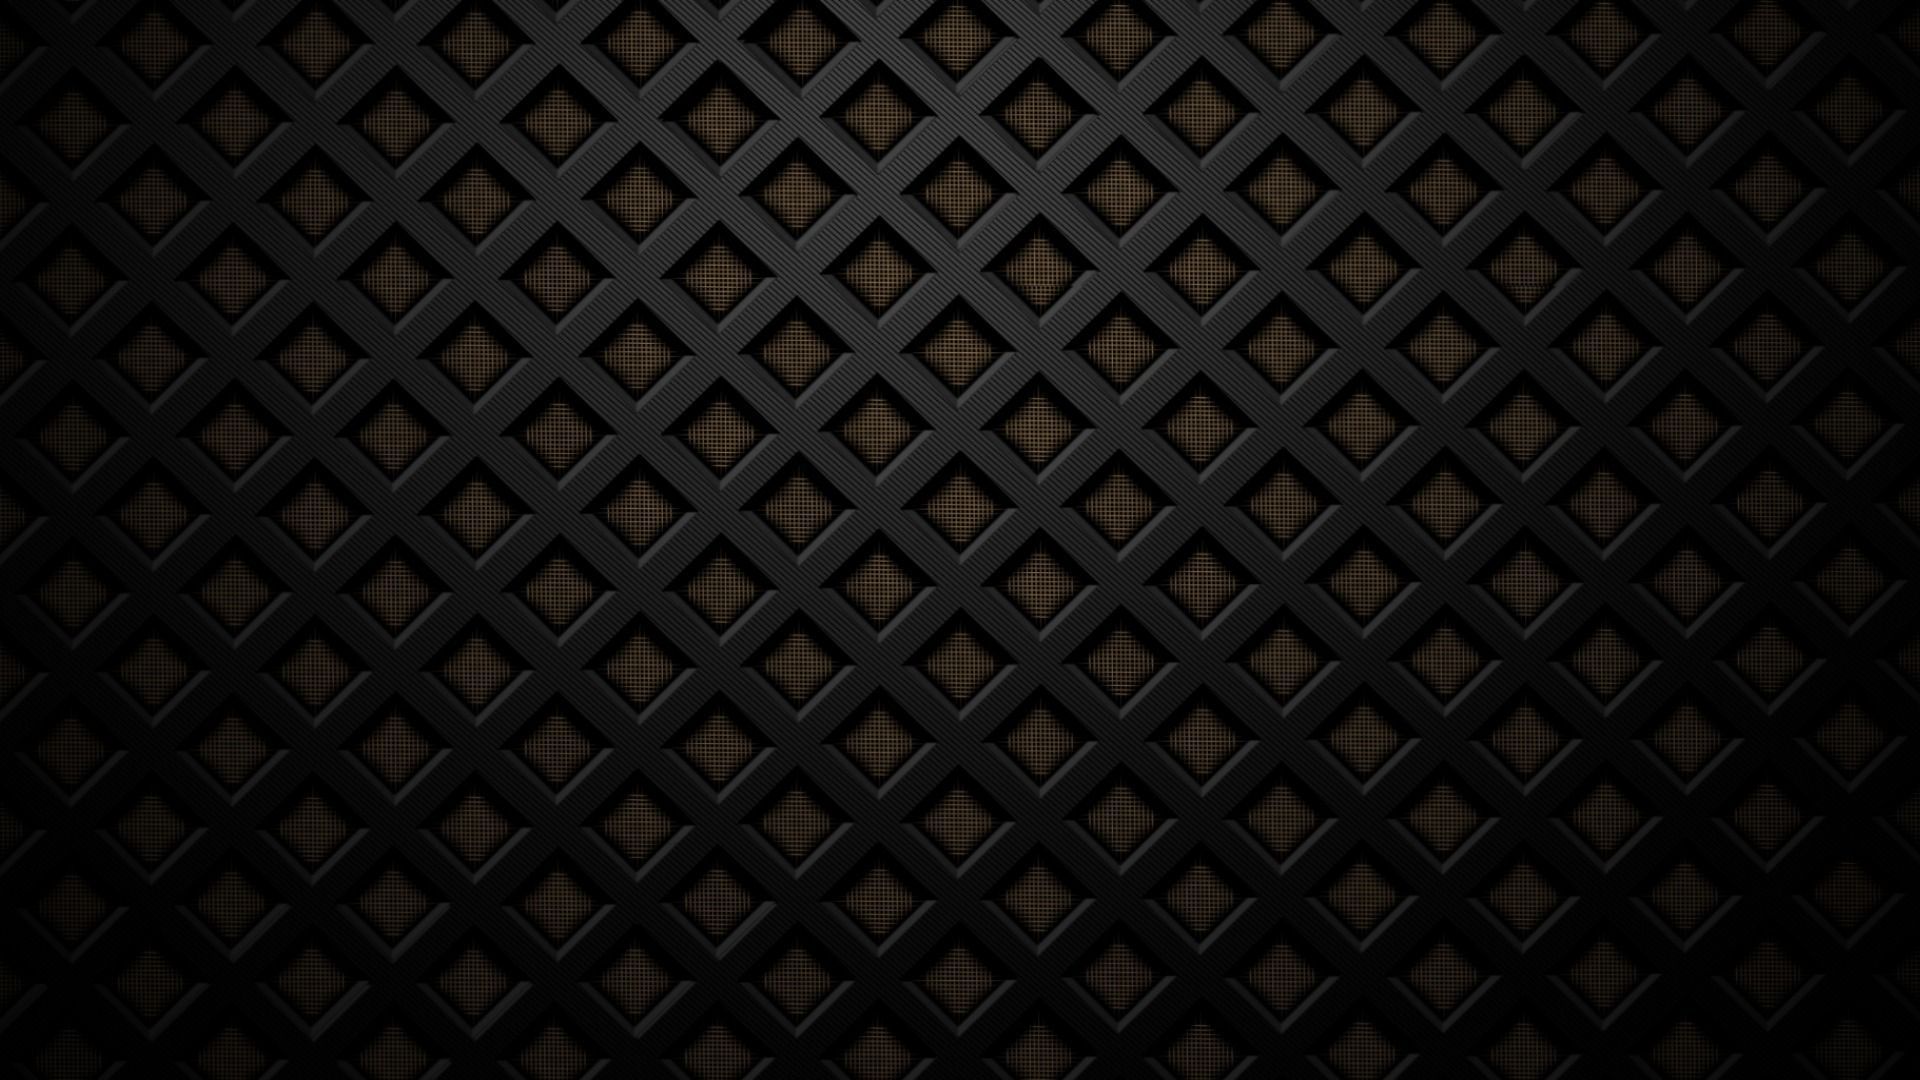 23743) Matrix HD Wallpaper For Mac - WalOps.com